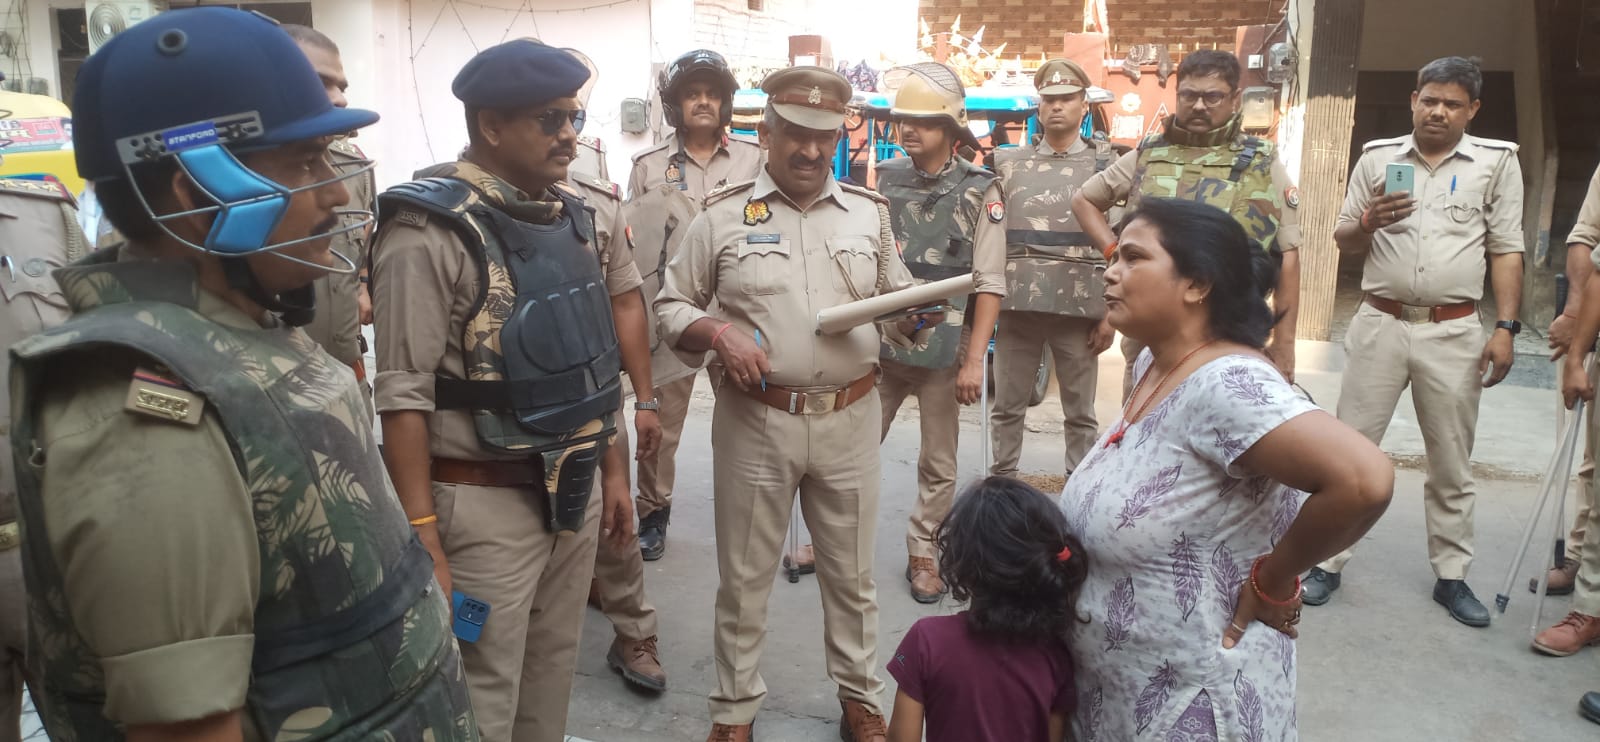 कानपुर: शहर के टॉप टेन अपराधियों के घर पुलिस की छापेमारी, कारतूस-तमंचे मिले